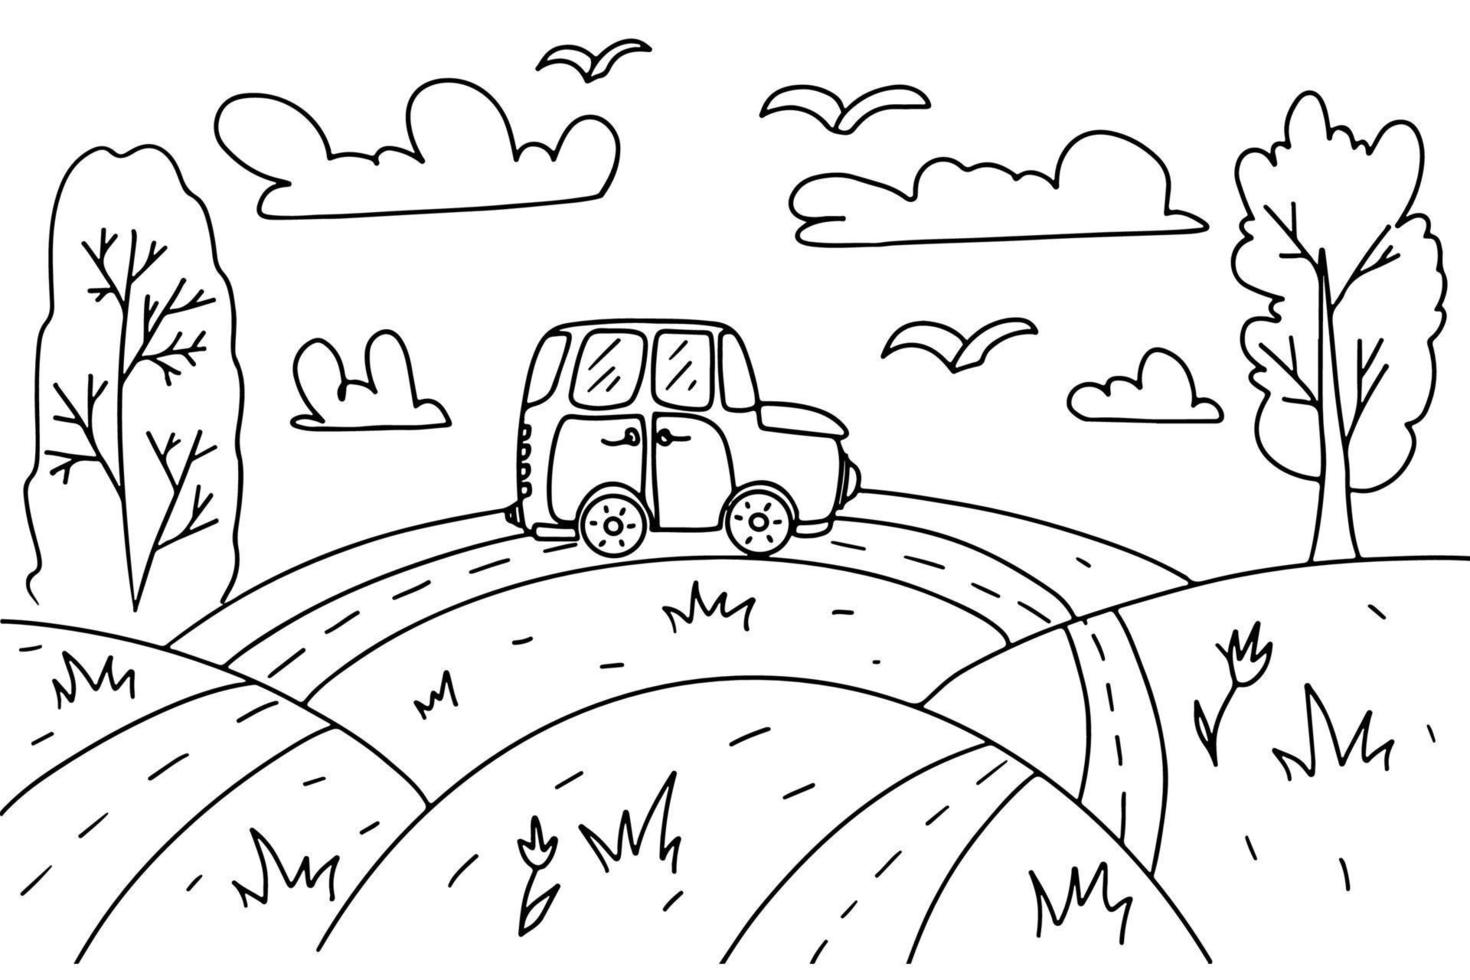 Malvorlage für Kinder. Landschaft mit Hügeln, Wolken, Feldern, Bäumen, Autos und Vögeln. Vektor handgezeichnete Illustration im Doodle-Stil. Aktivitätsbuch für Kinder.